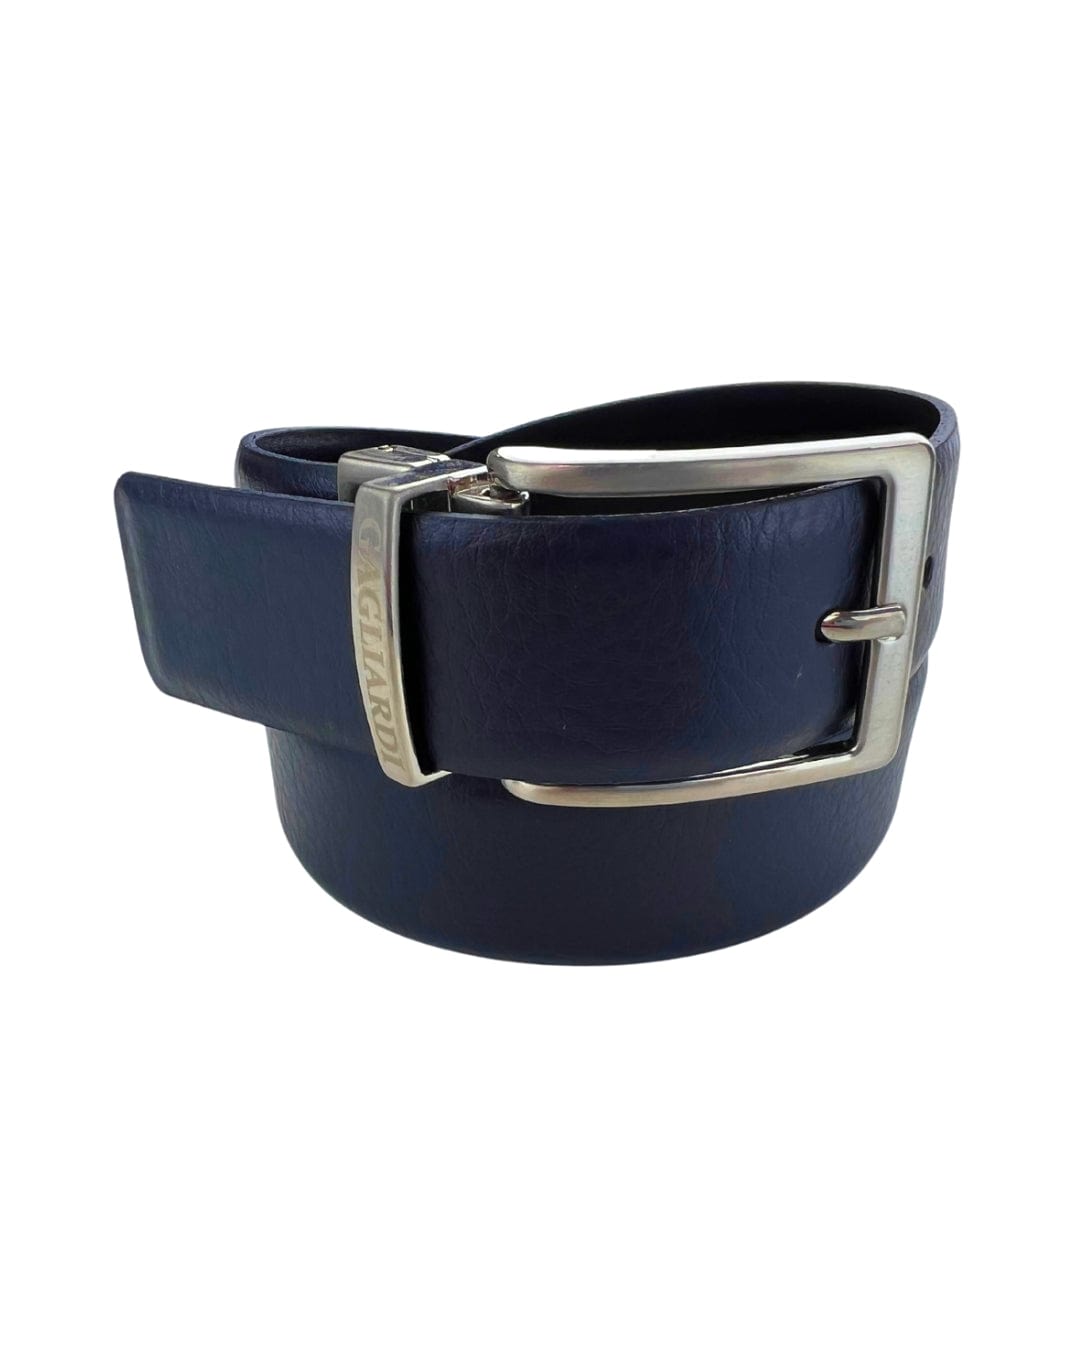 Gagliardi Belts Gagliardi Navy & Black Italian Leather Reversible Belt